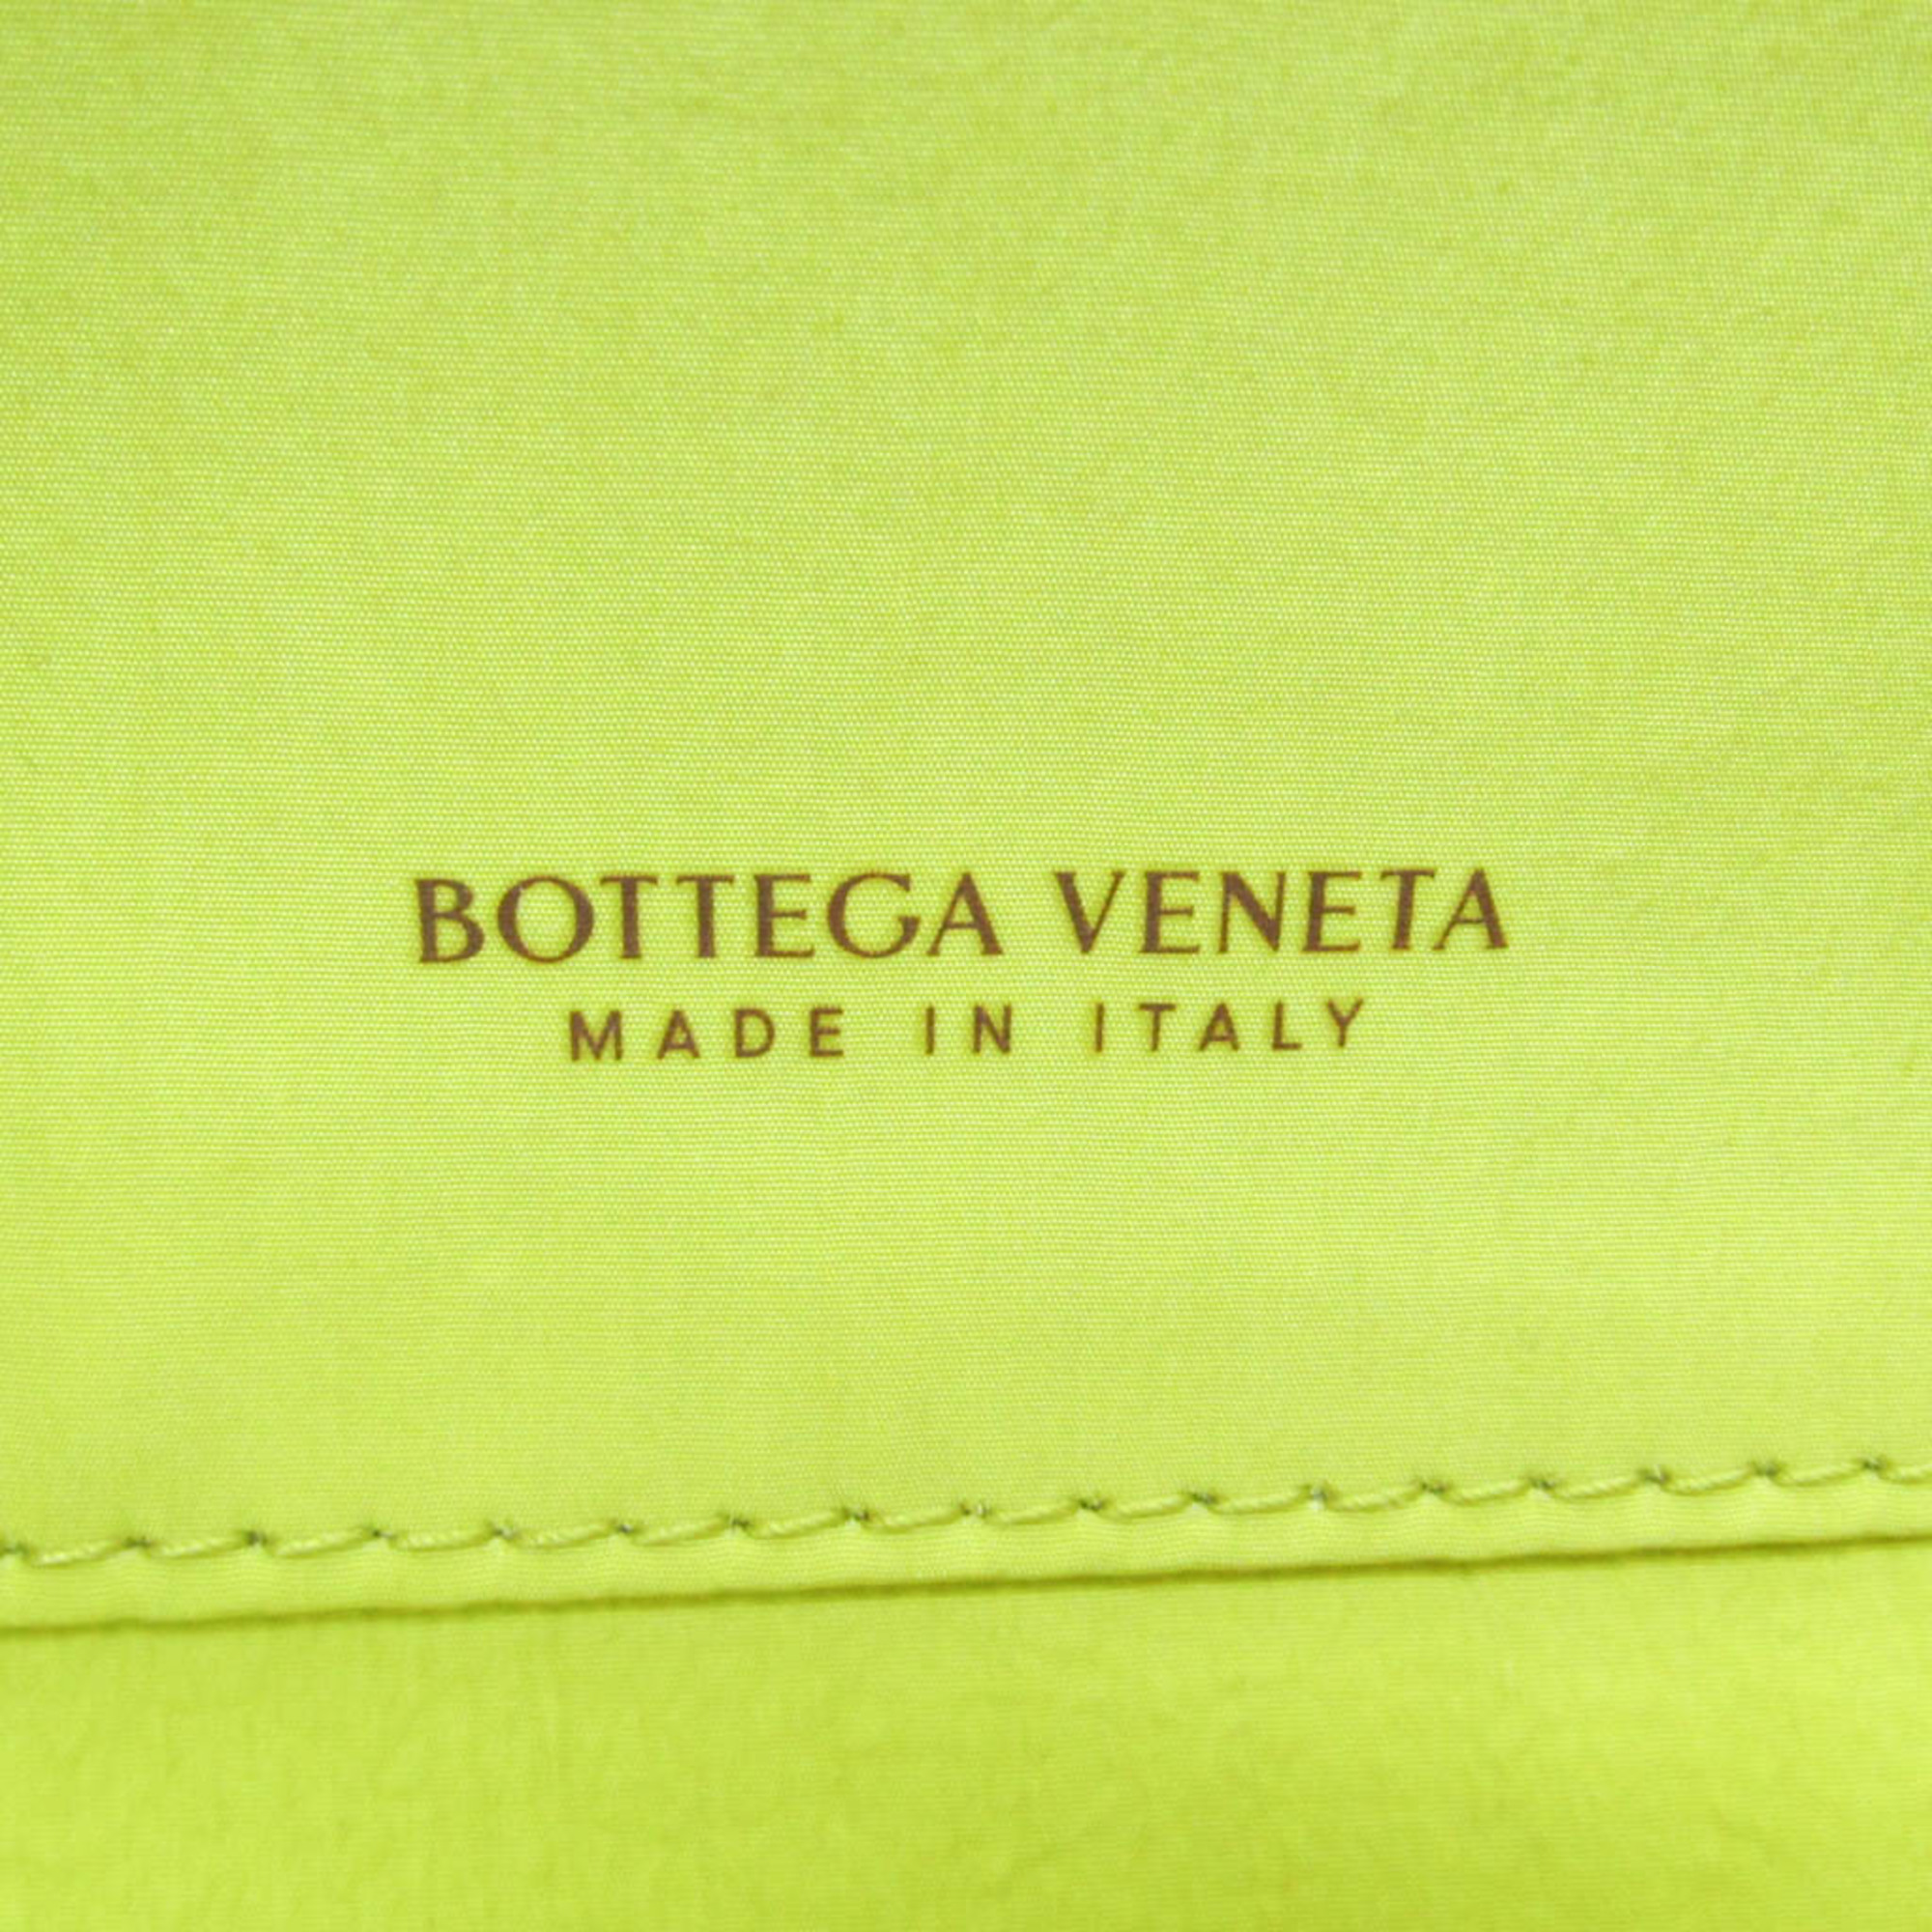 ボッテガ・ヴェネタ(Bottega Veneta) レディース,メンズ レザー クラッチバッグ,ポーチ イエロー